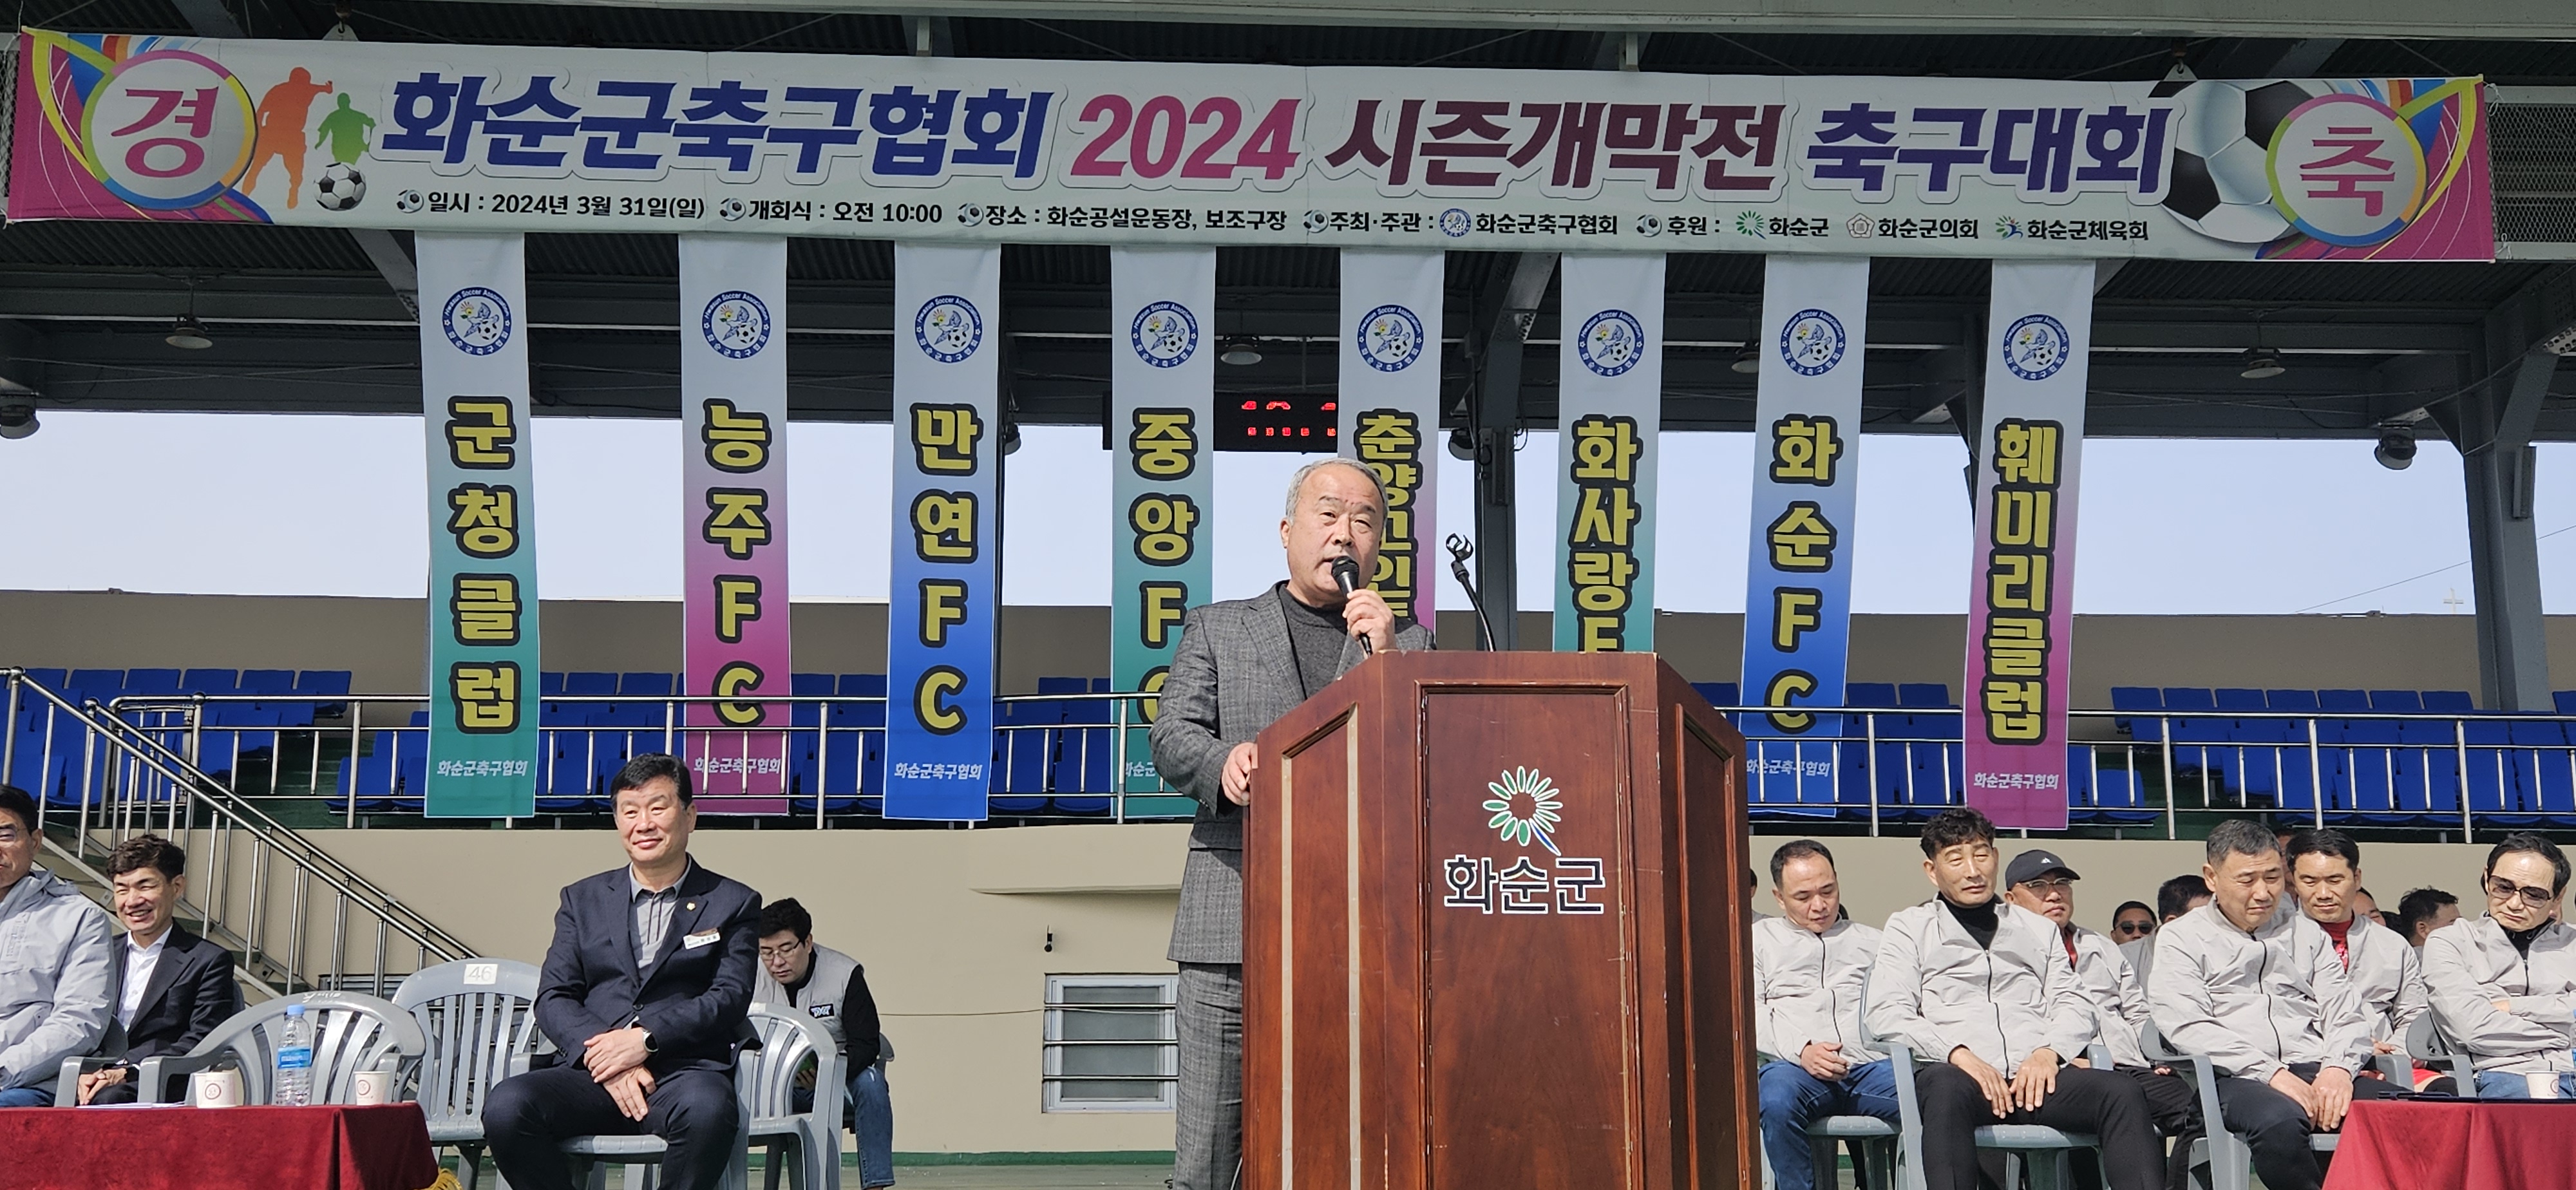 화순군축구협회 2024 시즌개막전 축구대회